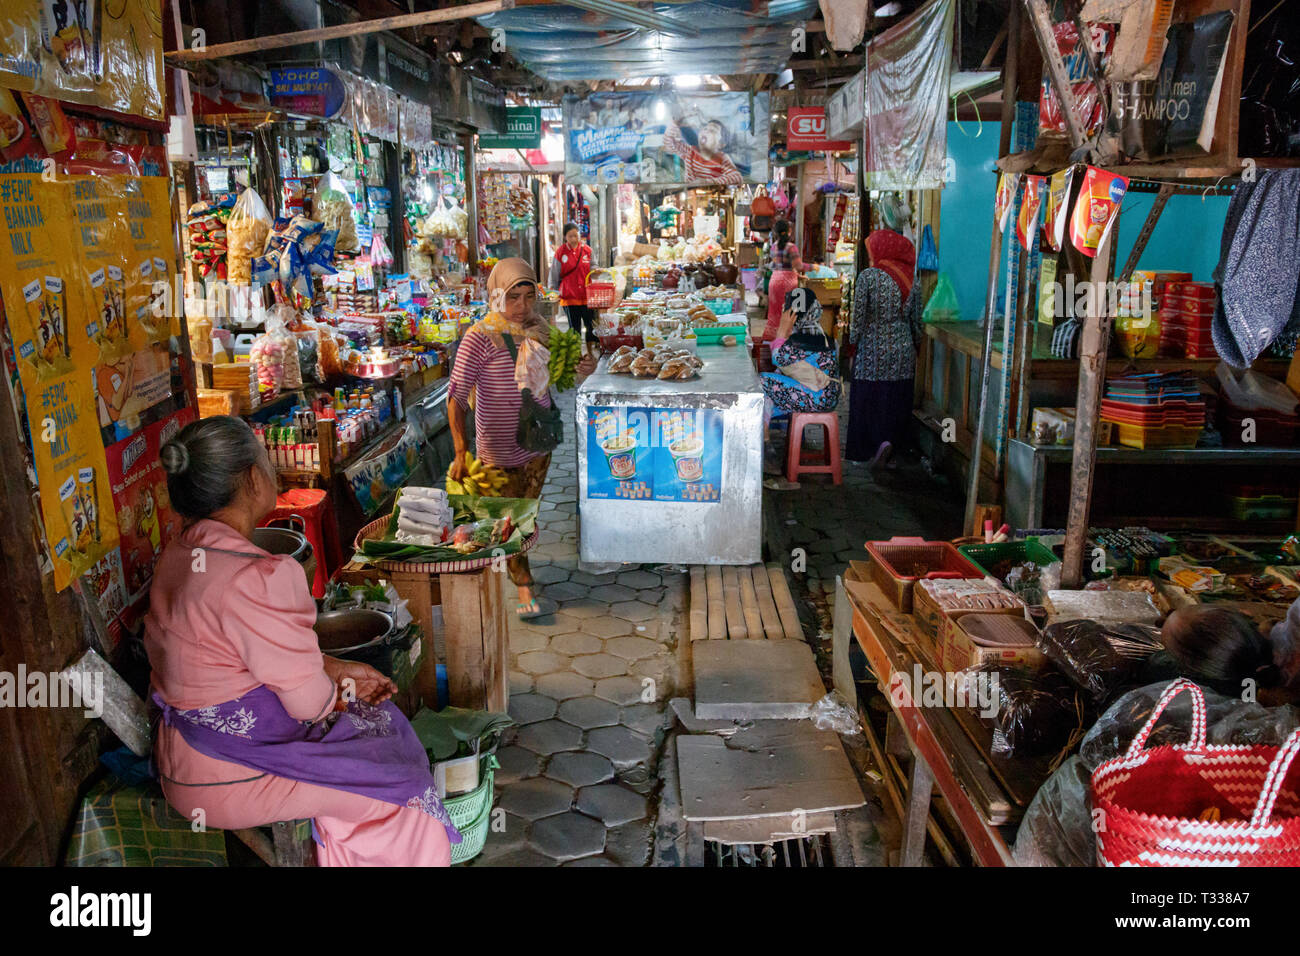 Undentified persone in un locale il mercato coperto di Borobudur village con scuri, stradine e i numerosi negozi. Foto Stock